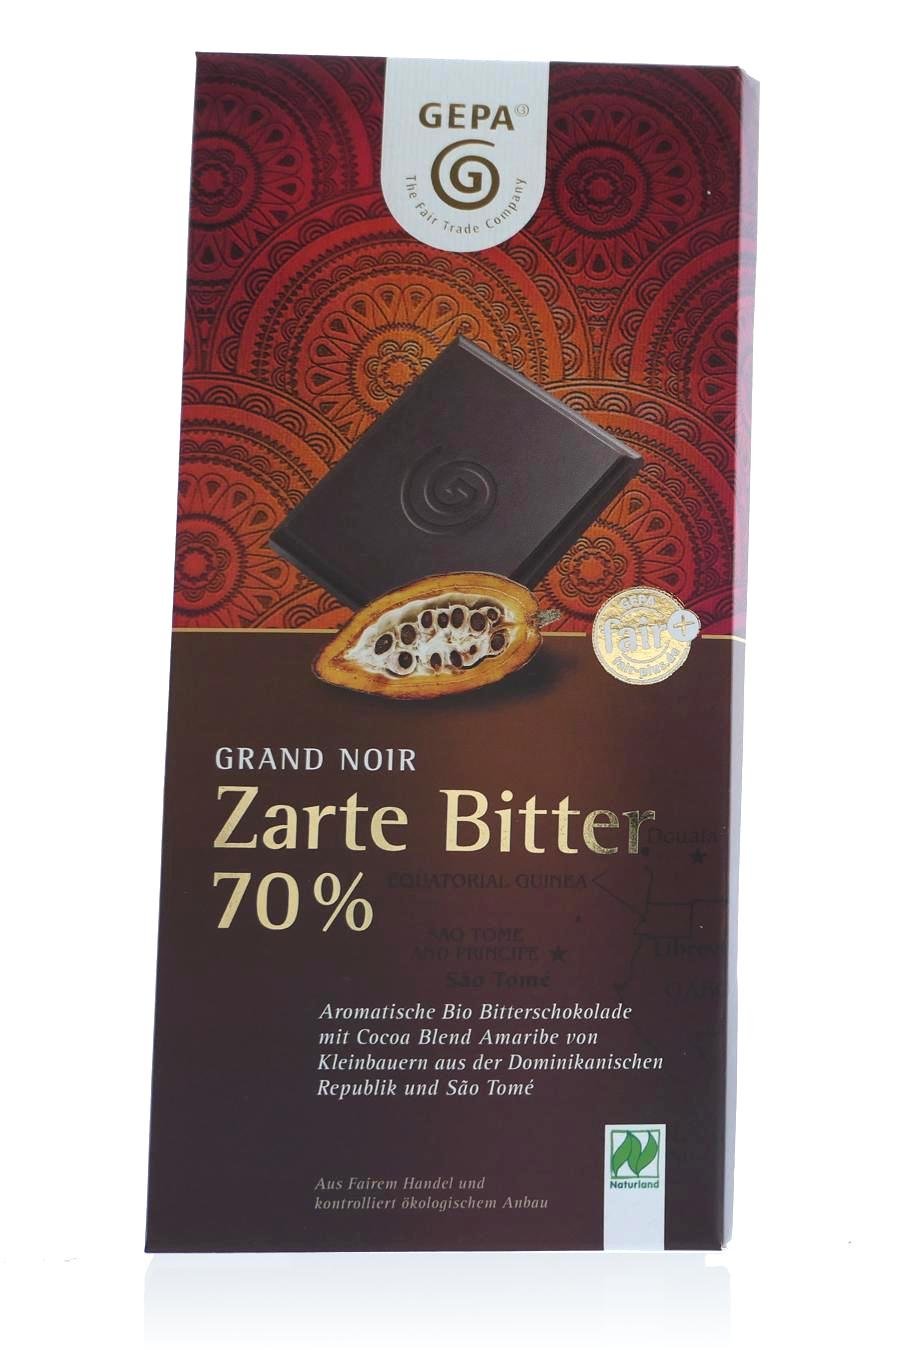 Grand Noir Zarte Bitter 70% (c) M. Kerk